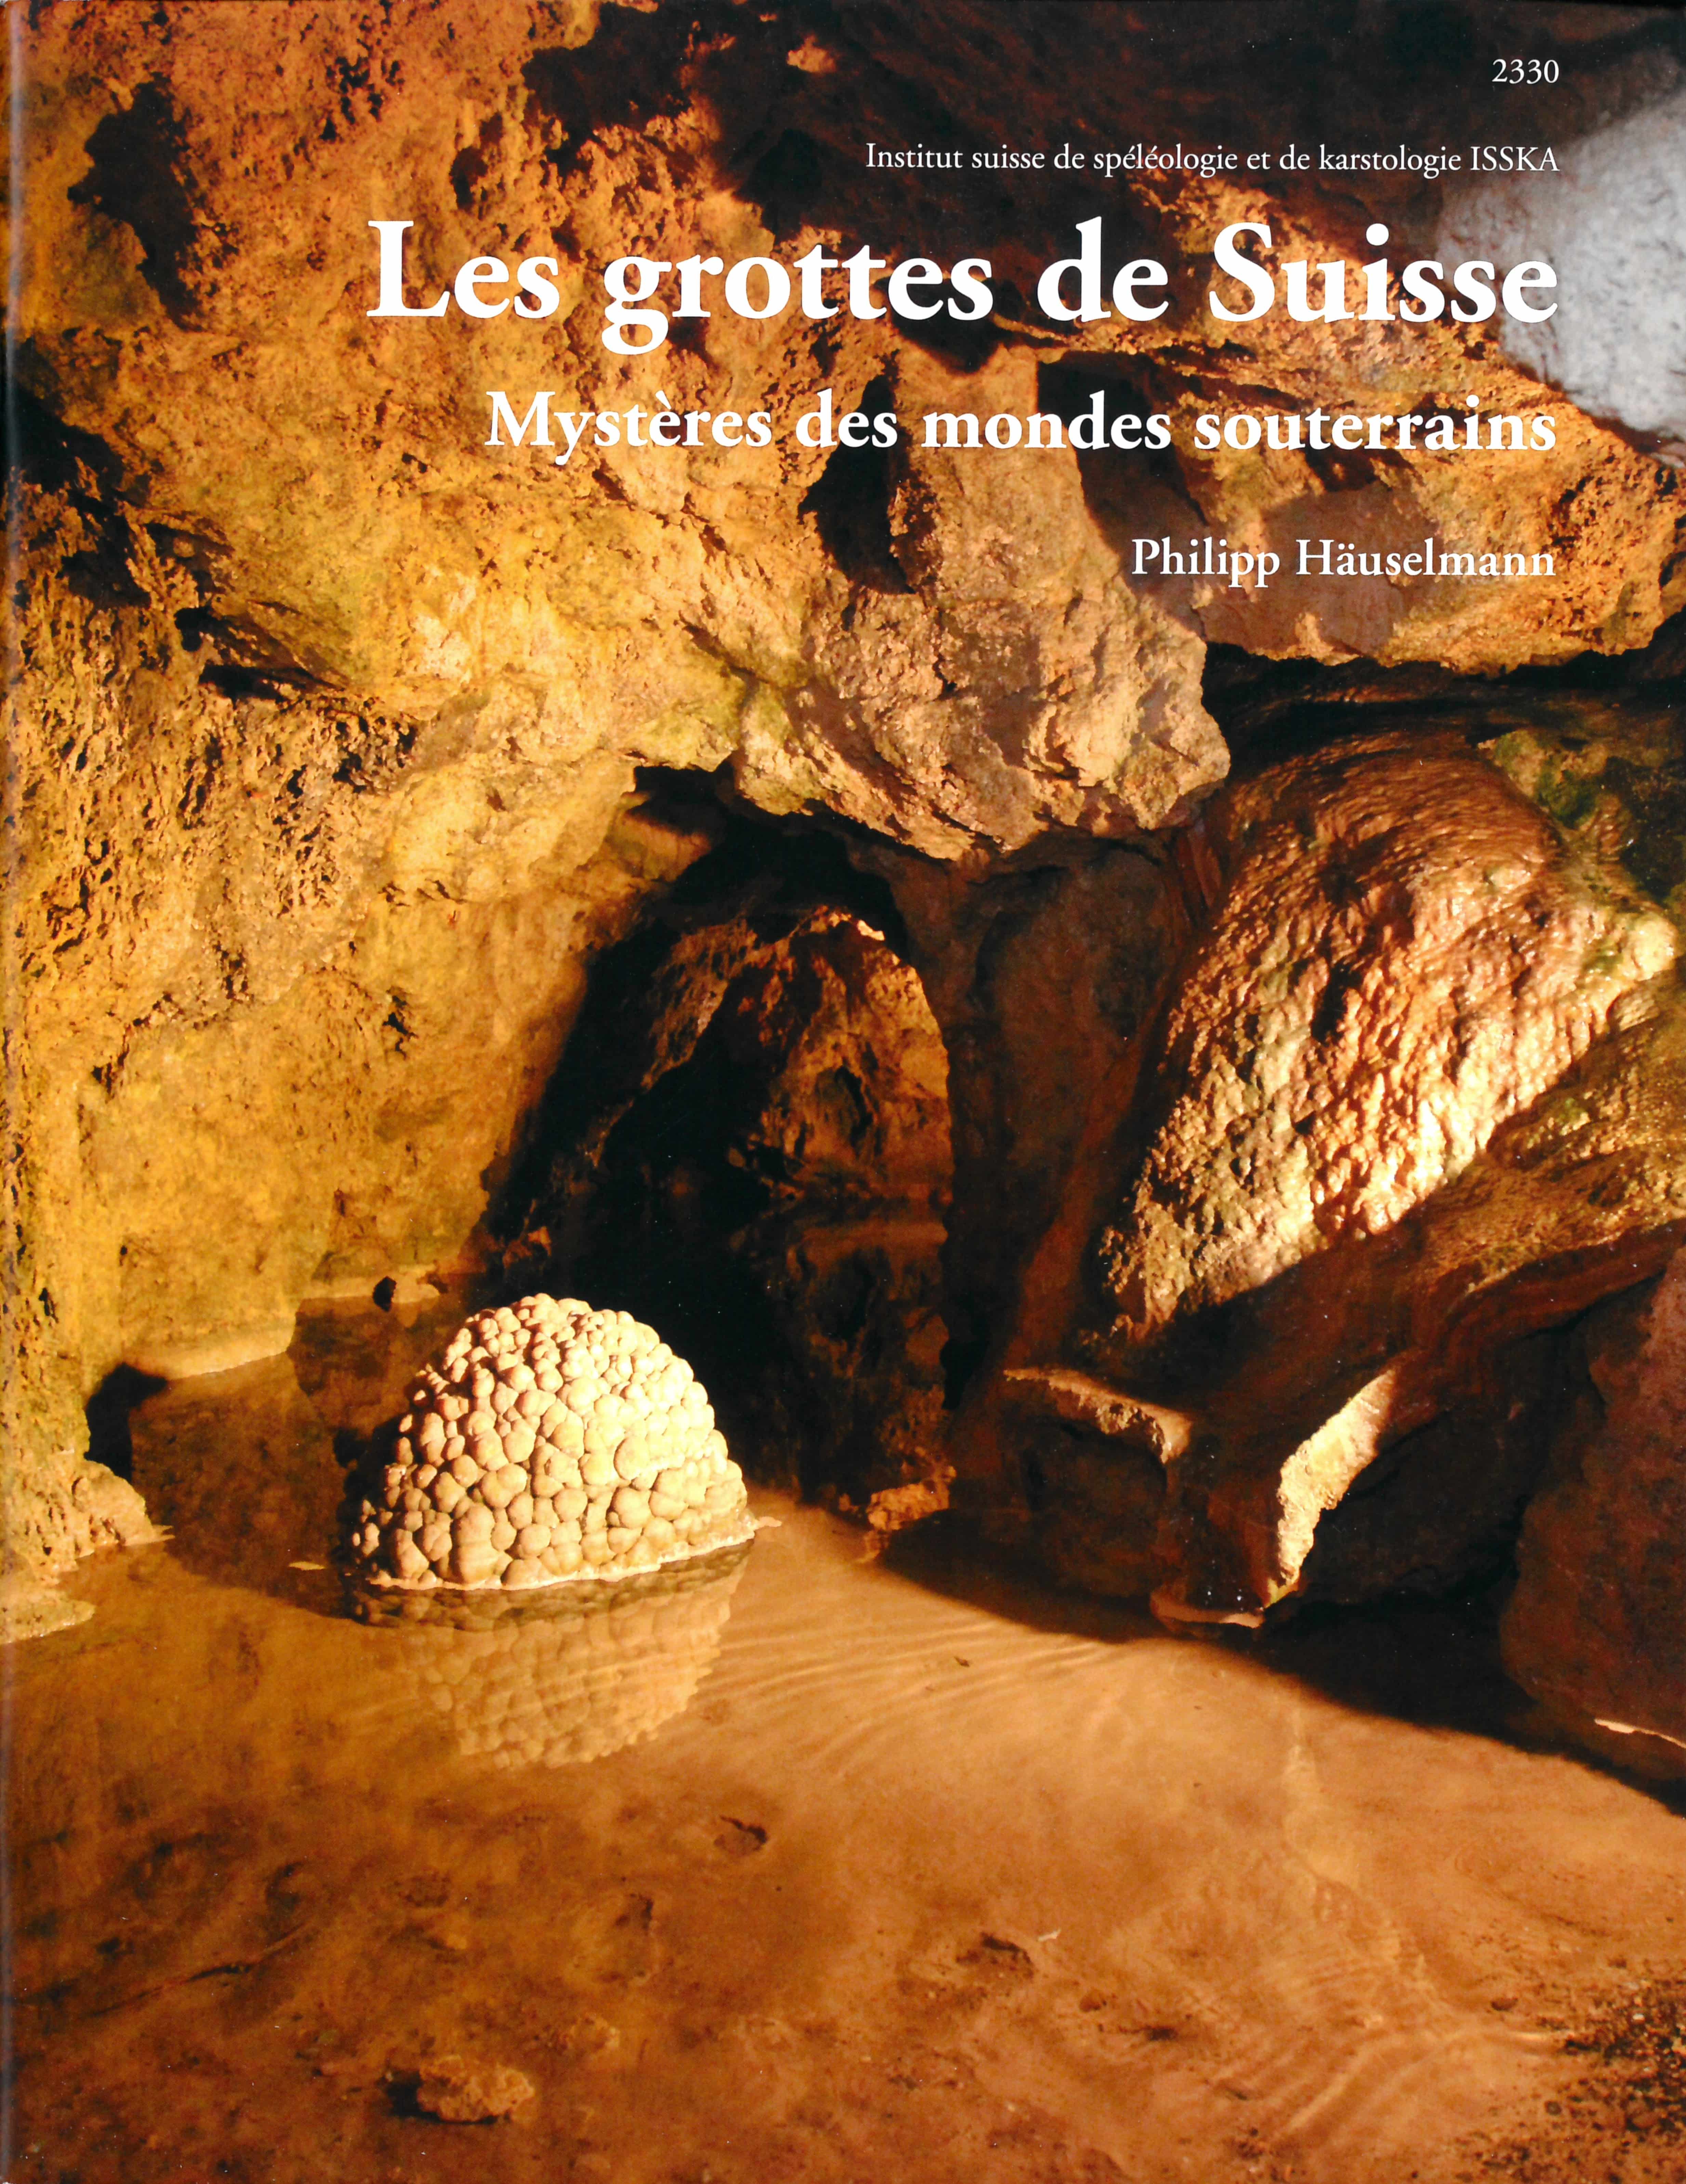 Les grottes de Suisse – Mystères des mondes souterrains